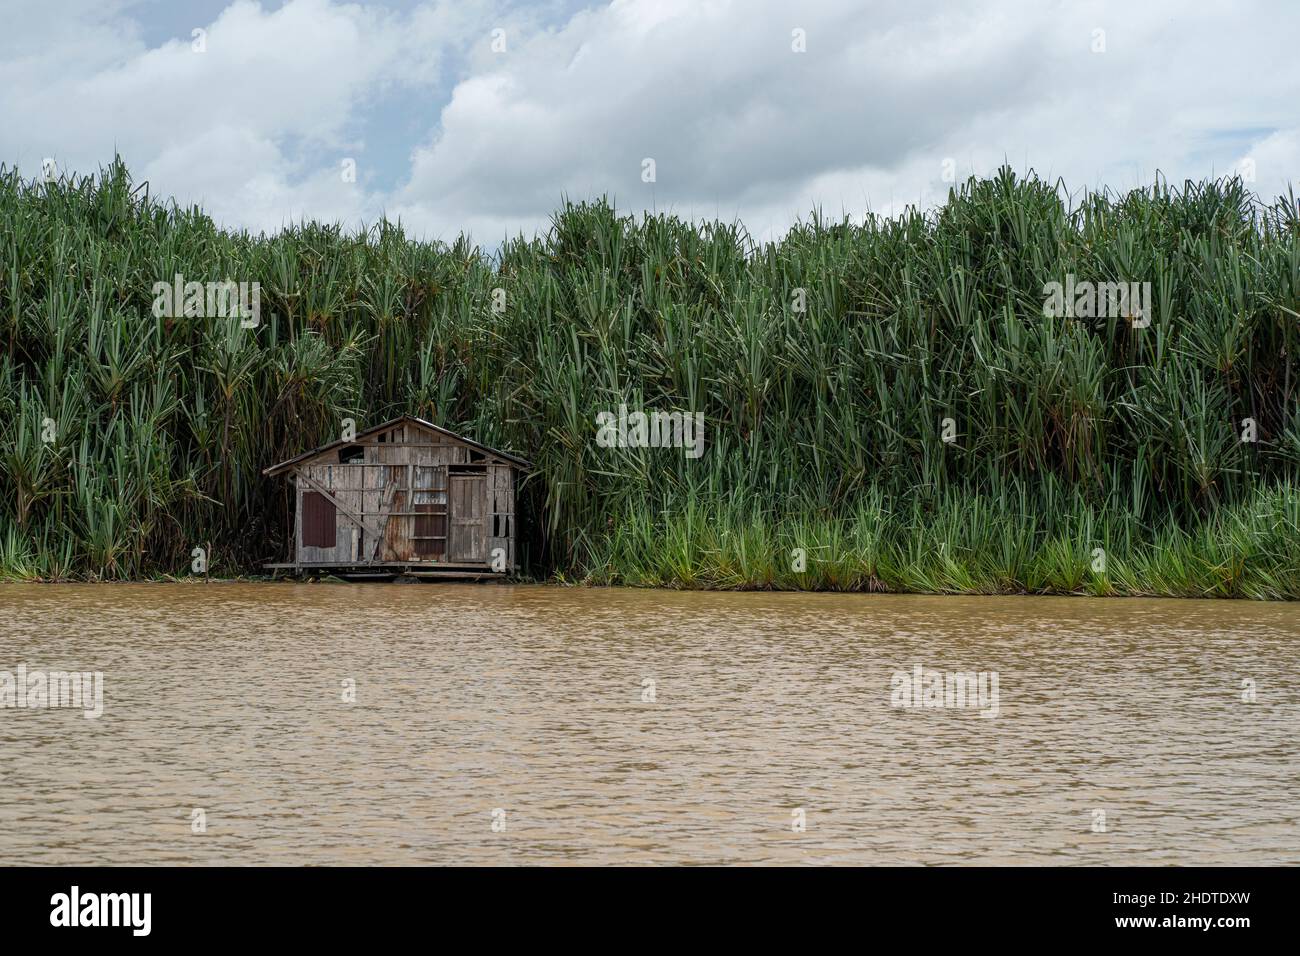 Eine traditionelle Hütte am ruhigen Wasser des Sees, umgeben von Pandanusbäumen. Selektive Fokuspunkte Stockfoto